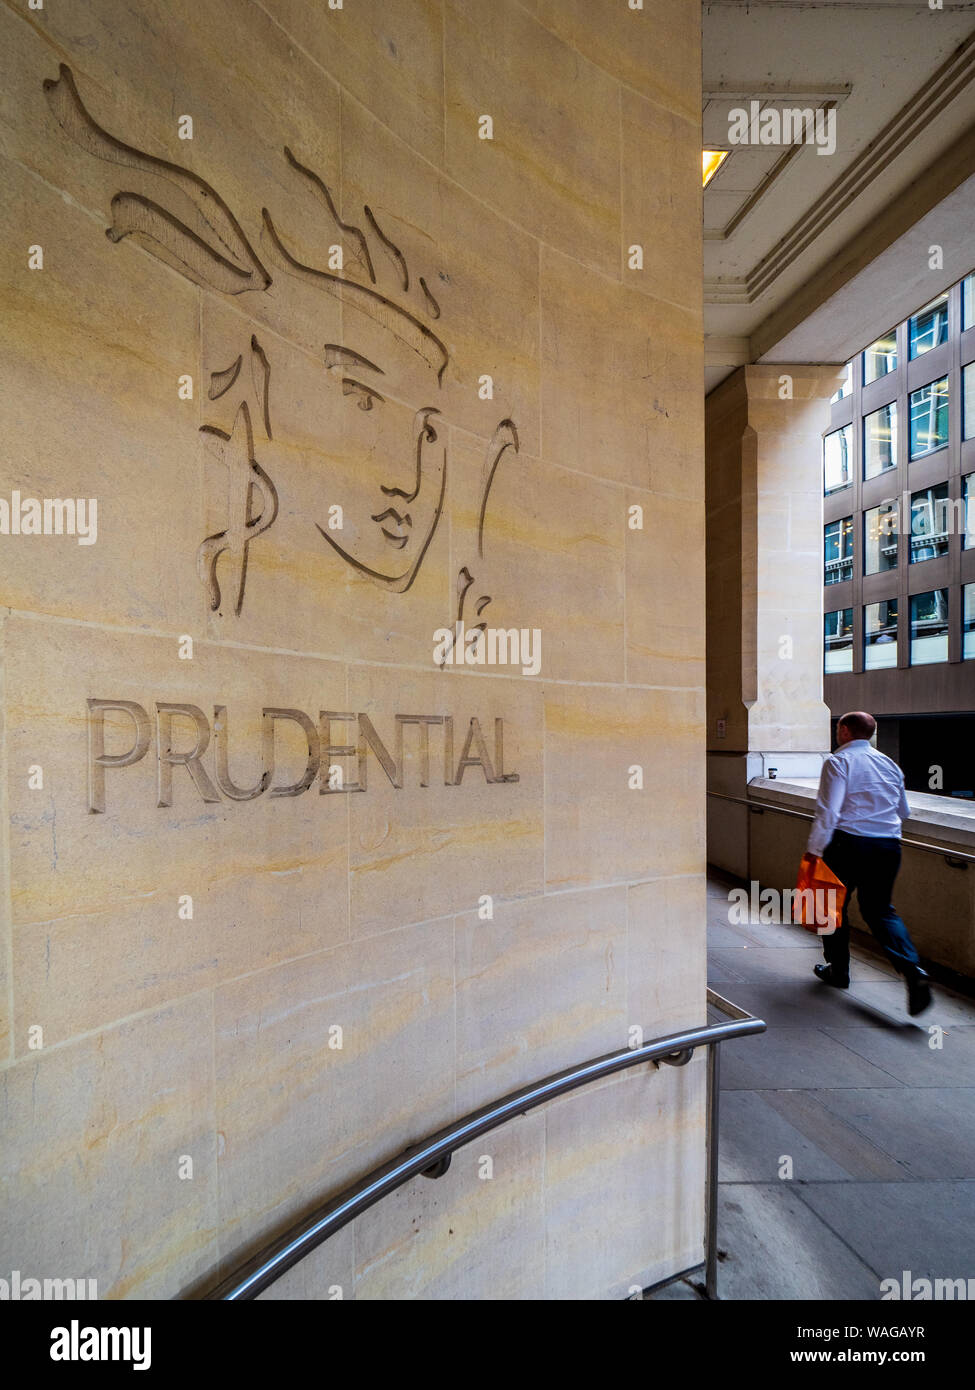 Logo Prudential London - logo de la Prudential Life Insurance and Financial Services Company gravé dans le mur d'un bâtiment du centre de Londres au Royaume-Uni Banque D'Images